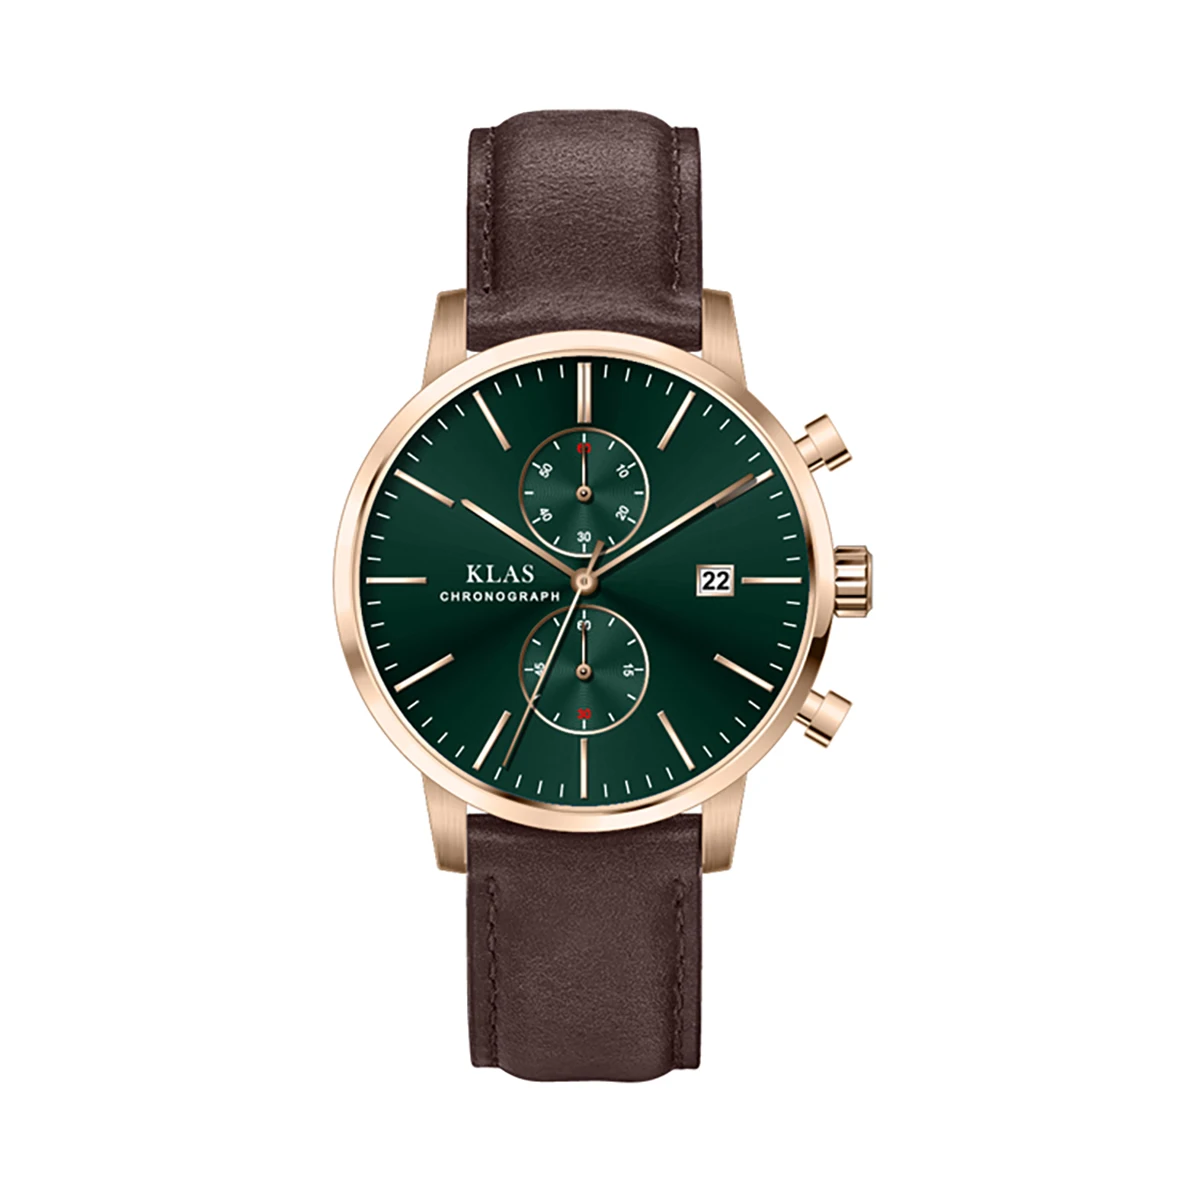 2021 New Fashion Mens Watches Waterproof Quartz Wrist Watch Top Brand Luxury   KLAS Brand часы женские бренд